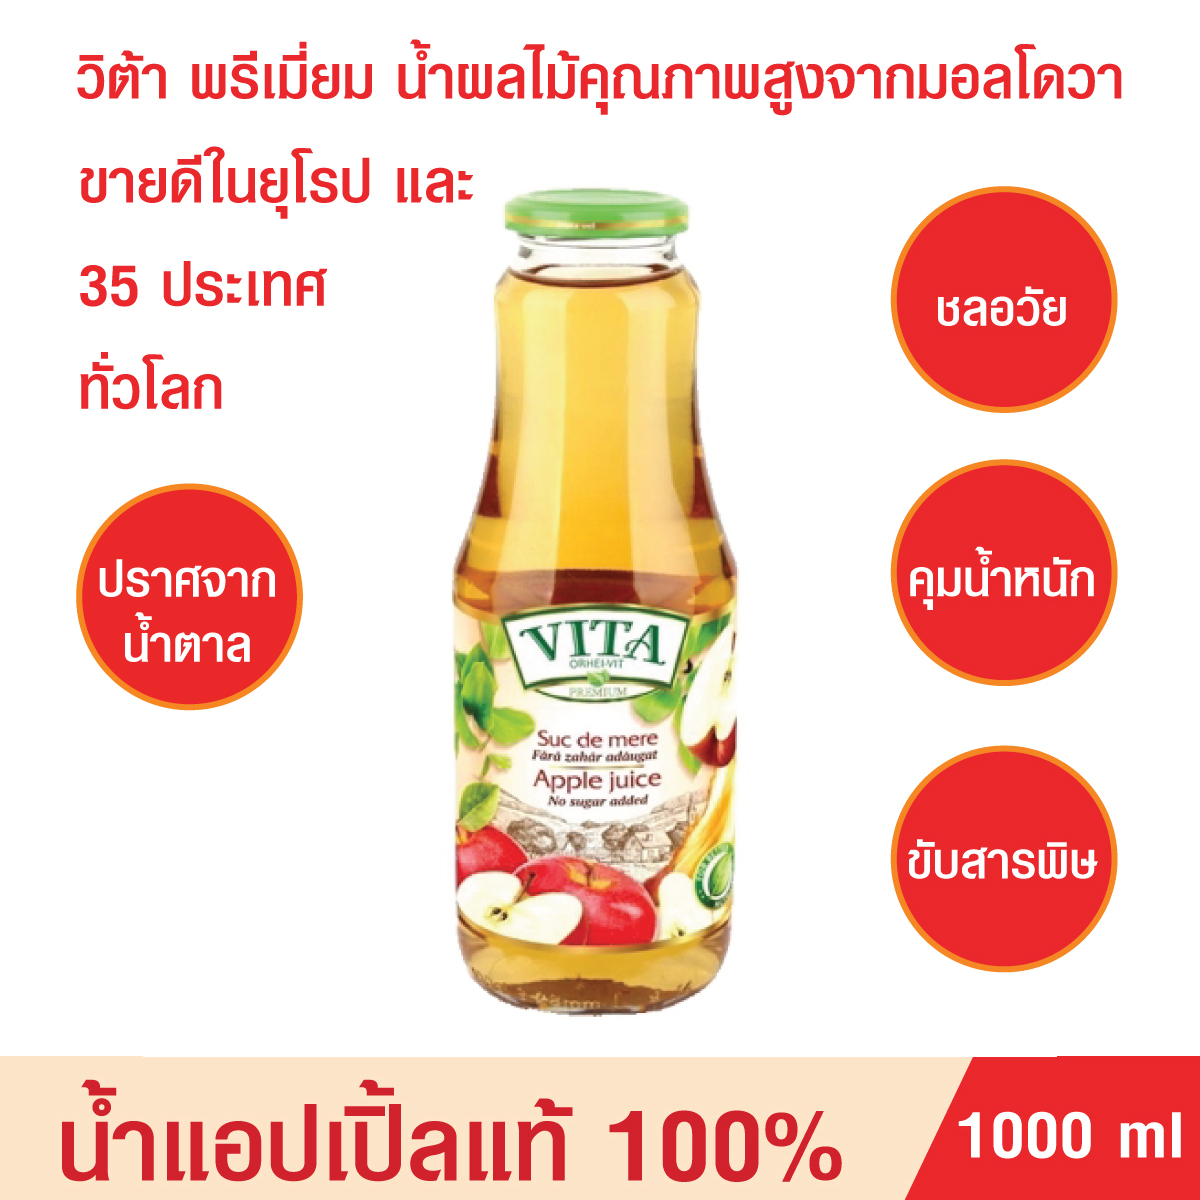 น้ำแอปเปิ้ลแท้ น้ำผลไม้ VITA น้ำผลไม้แท้ น้ำแอปเปิ้ลแท้1000%Apple juice No sugar added น้ำผลไม้พรีเมี่ยมจากมอลโดวา ไม่มีน้ำตาล ขับสารพิษ บรรจุ1000 ml